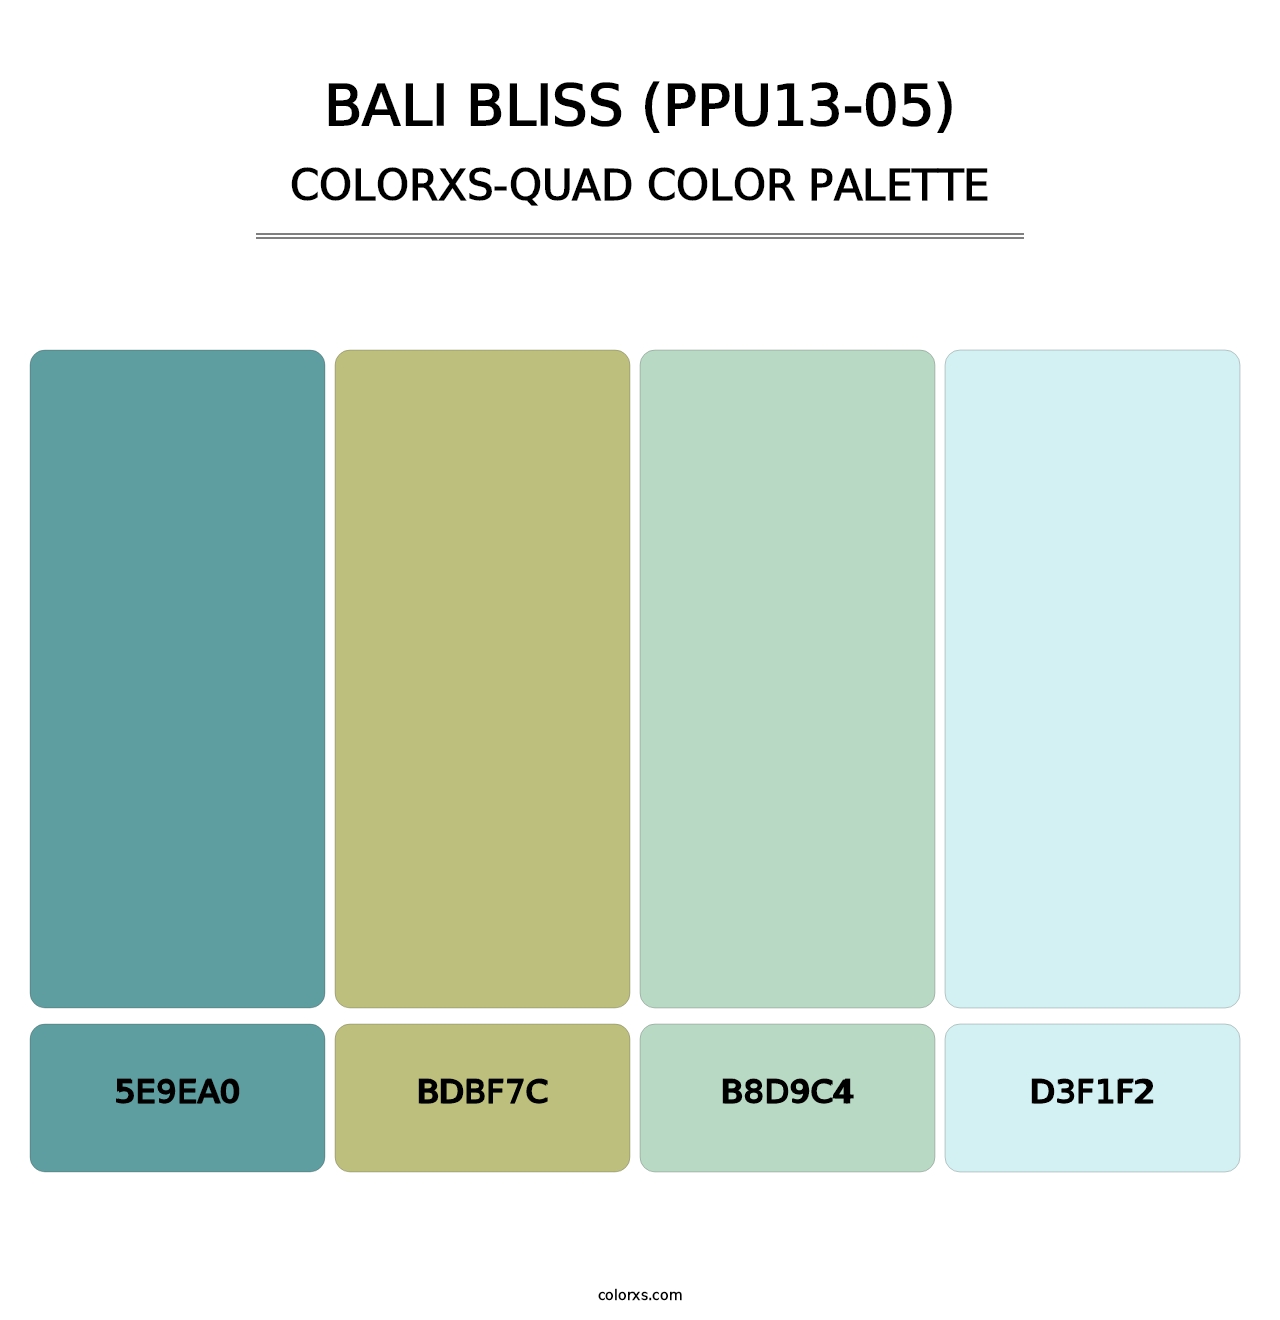 Bali Bliss (PPU13-05) - Colorxs Quad Palette